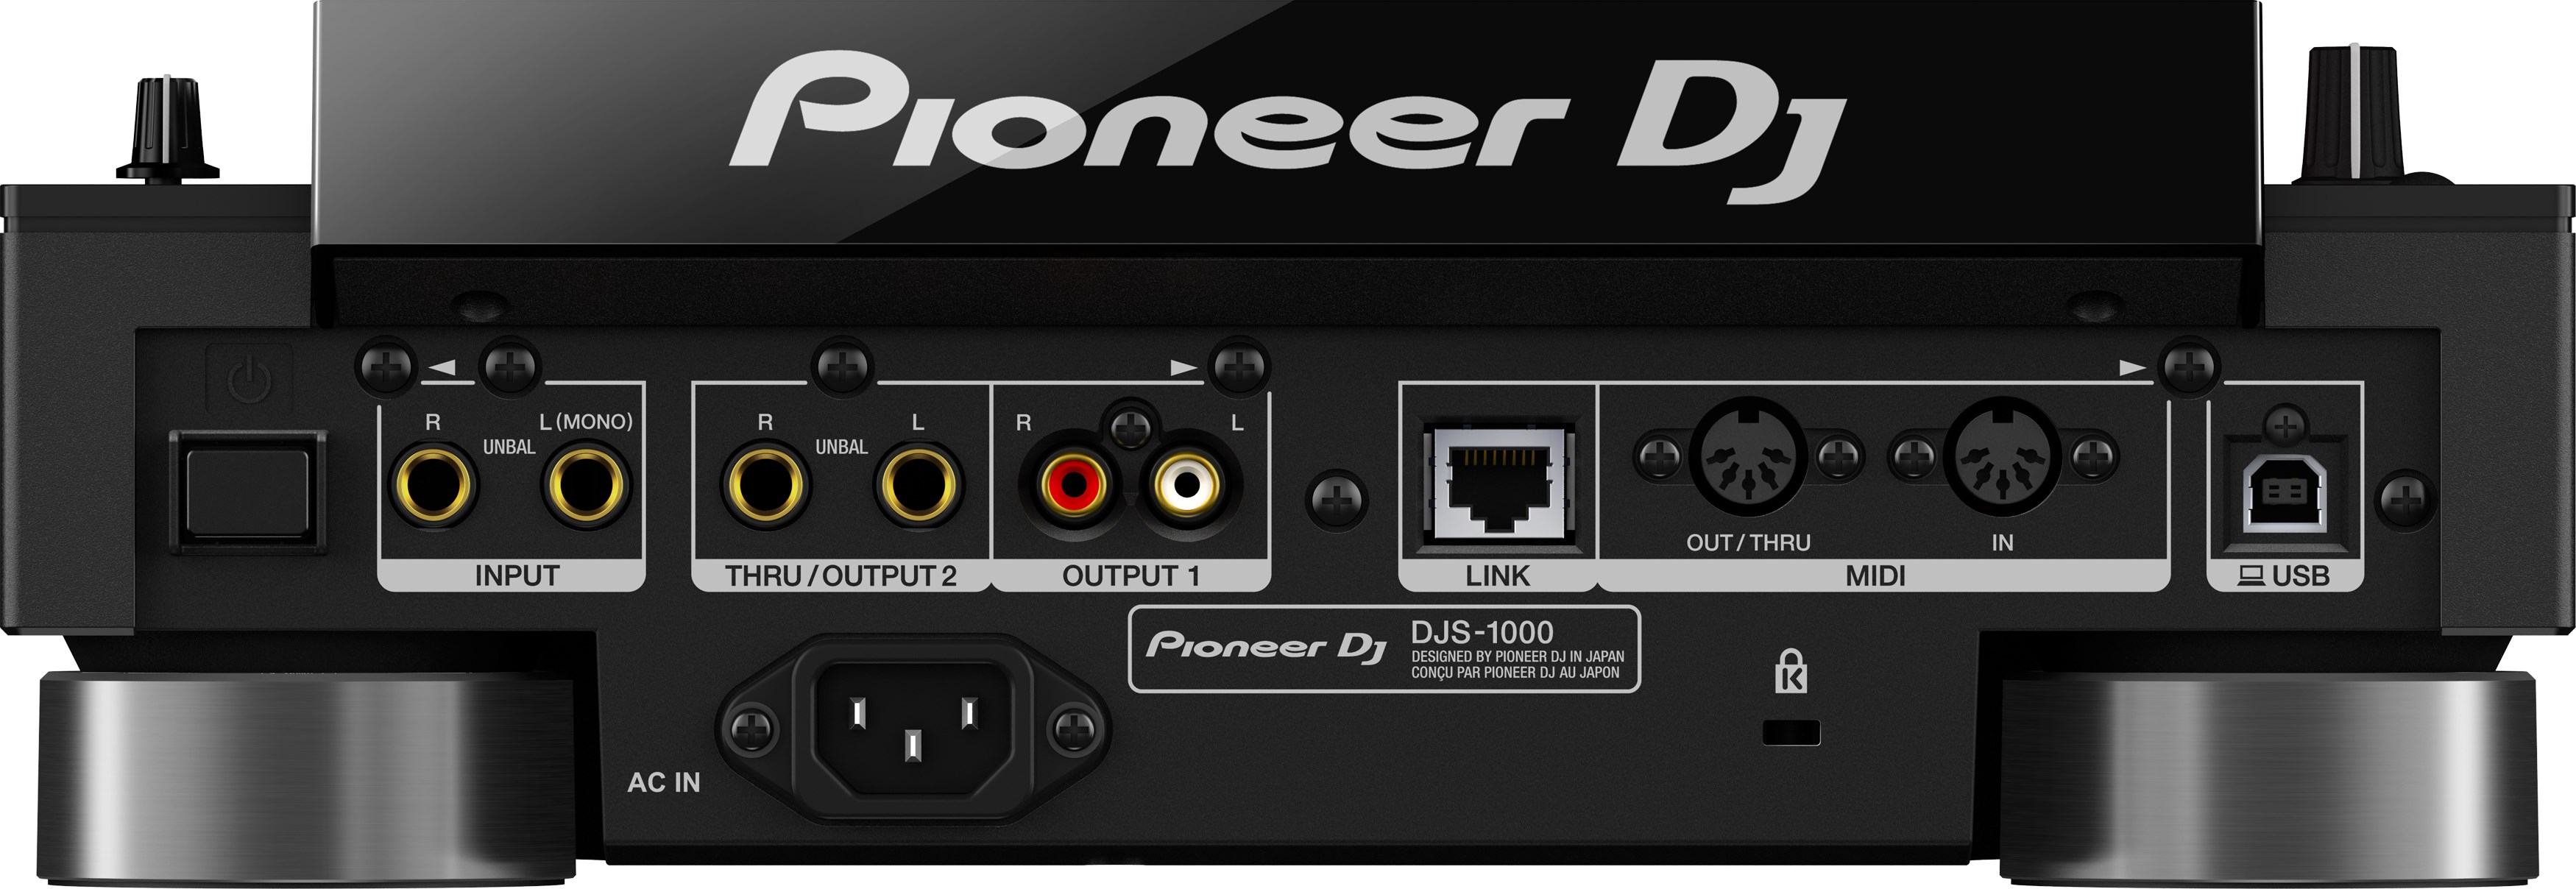 Pioneer Dj Djs-1000 - Sampleur / Groovebox - Variation 1